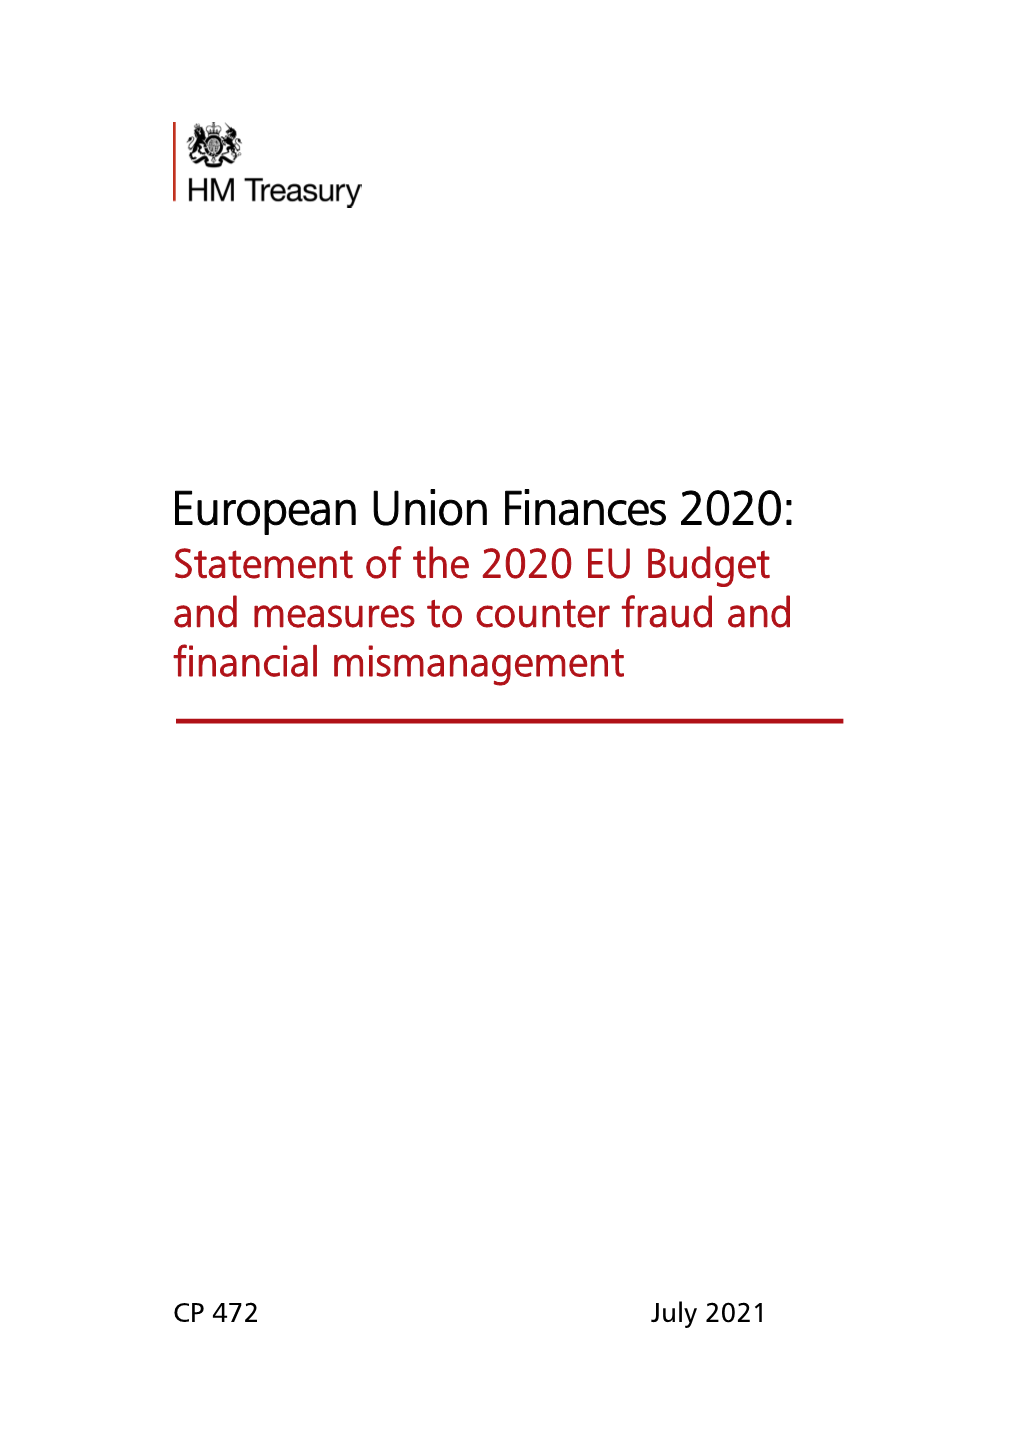 European Union Finances Statement 2020